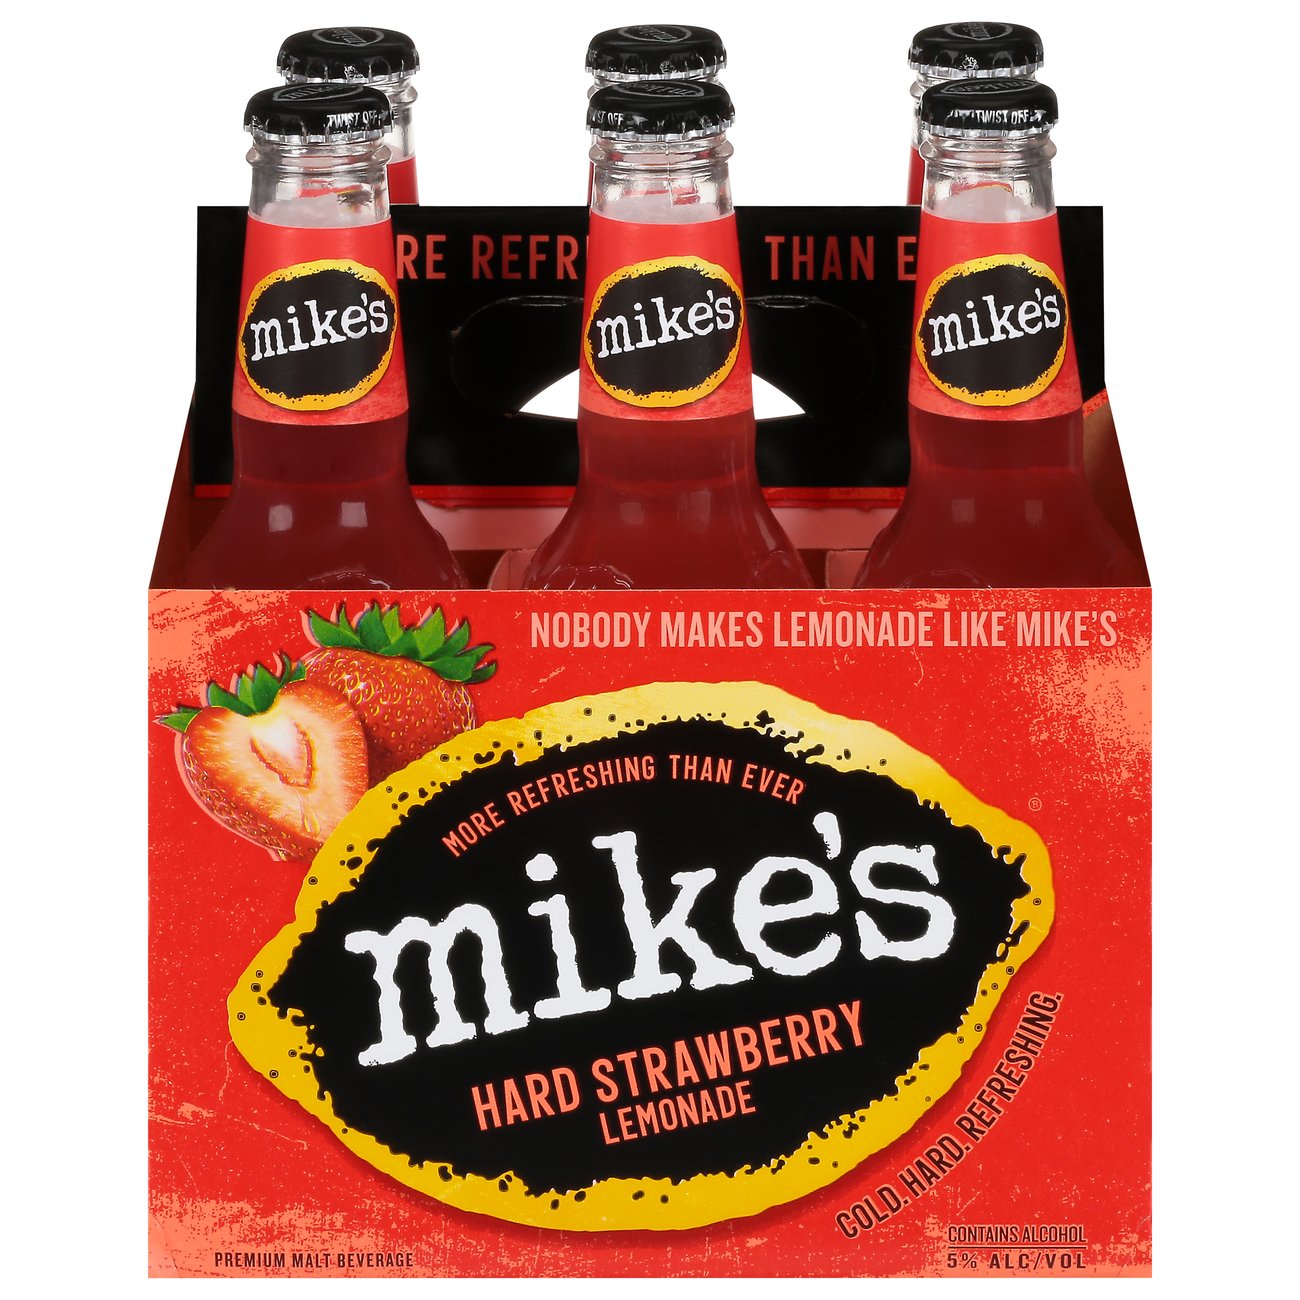 mike-s-hard-strawberry-lemonade-11-2-oz-bottles-shop-malt-beverages